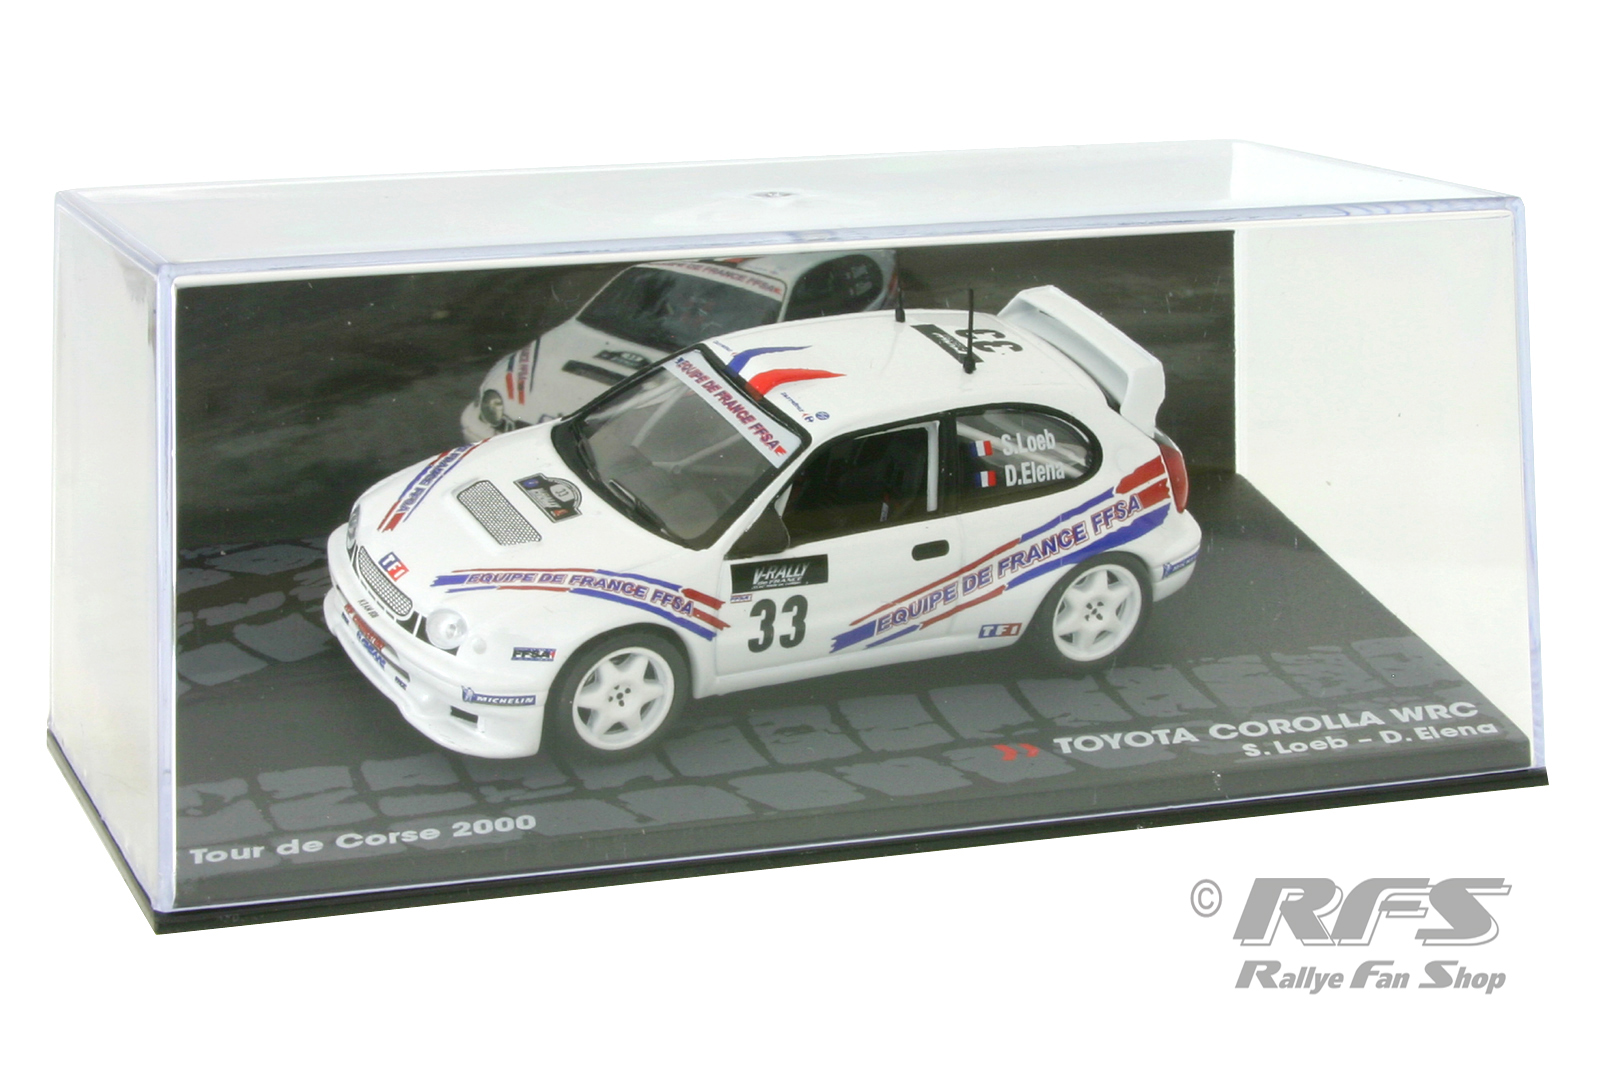 Toyota Corolla WRC - Tour de Corse 2000